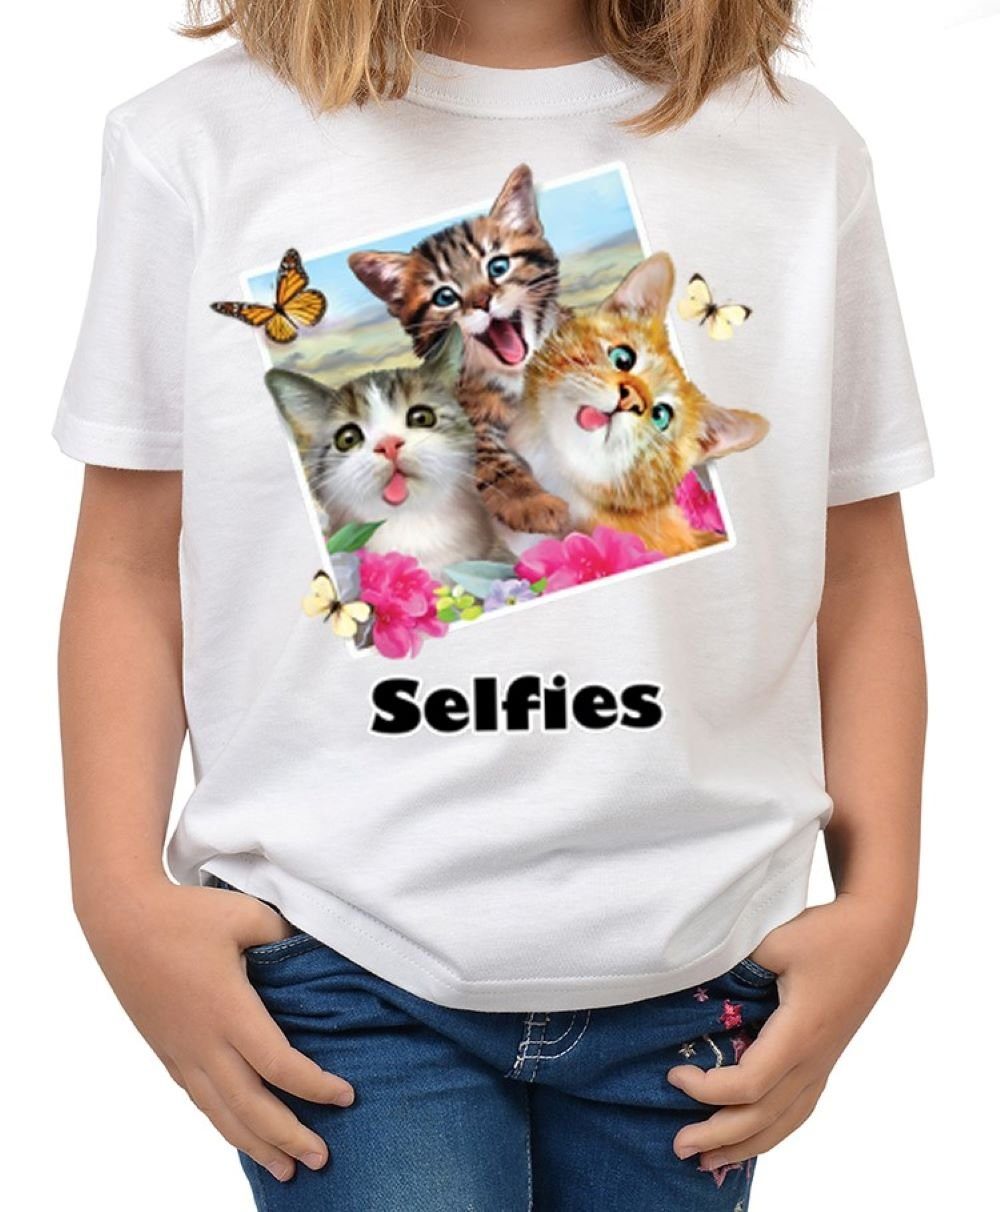 - Schmetterling Shirts Motiv : Schmetterlinge Tini Kindershirt buntes - Katzen-Selfie Katzen / Katzen Print-Shirt Foto Cats Selfie